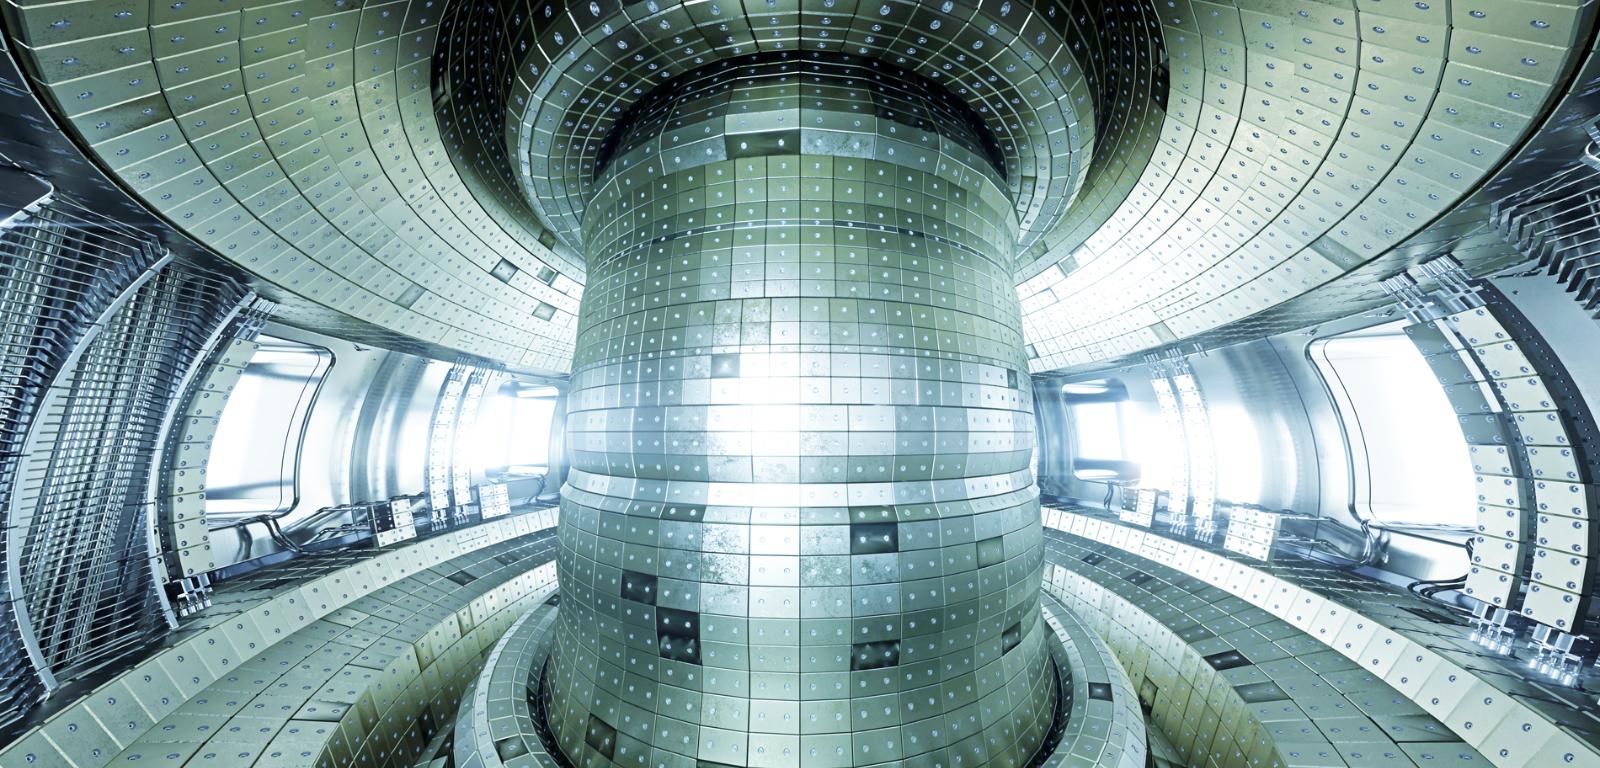 Reaktor termojądrowy typu tokamak (wizja artystyczna).